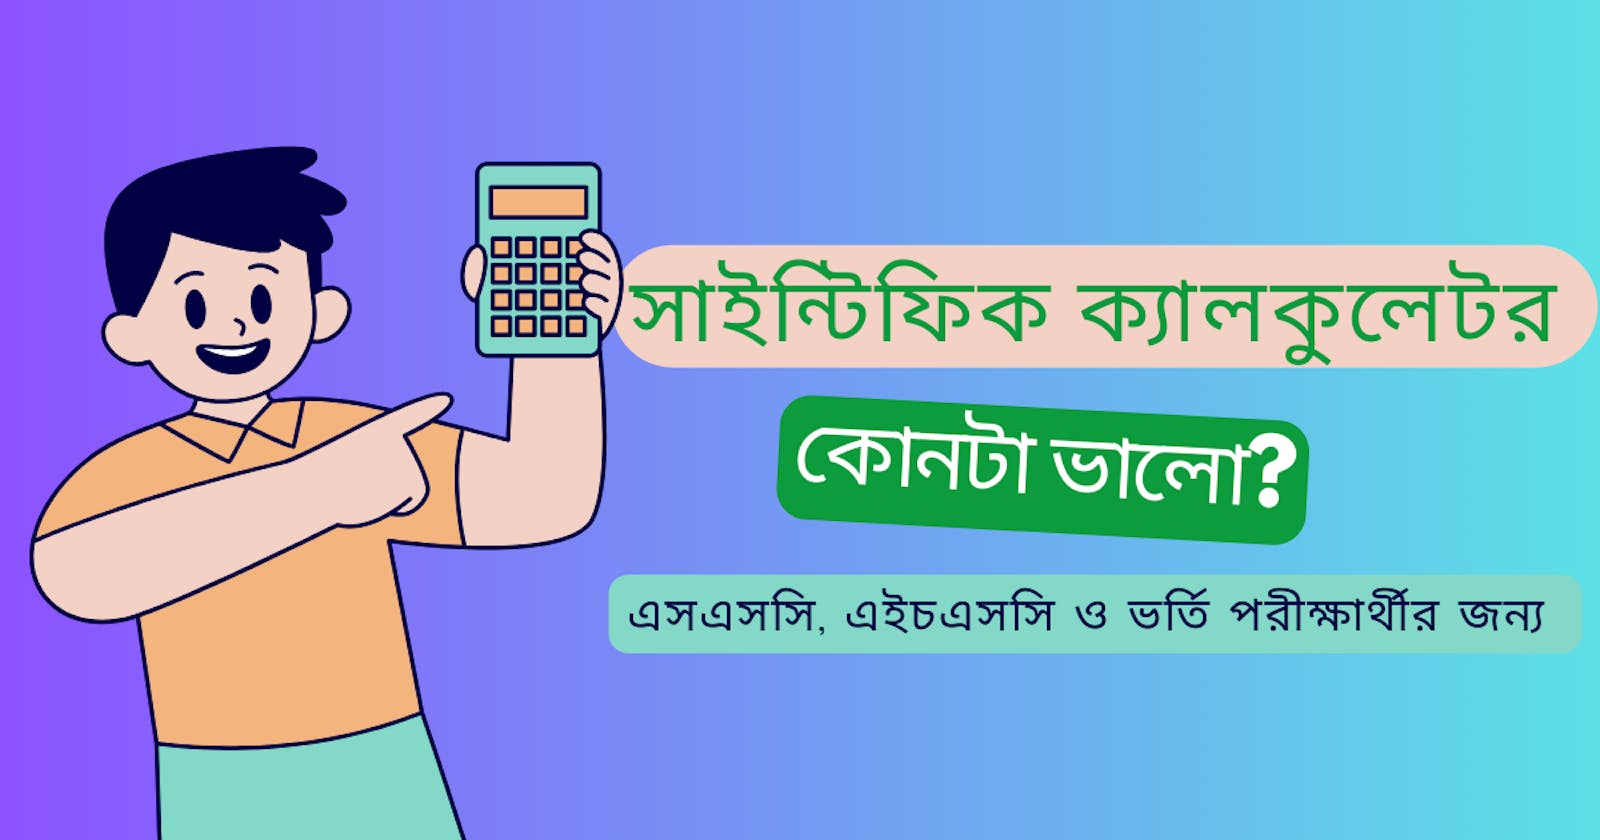 সাইন্টিফিক ক্যালকুলেটর কোনটা ভালো এসএসসি, এইচএসসি ও ভর্তি পরীক্ষার্থীর জন্য। Best scientific calculator price in bd for SSC, HSC, admission students